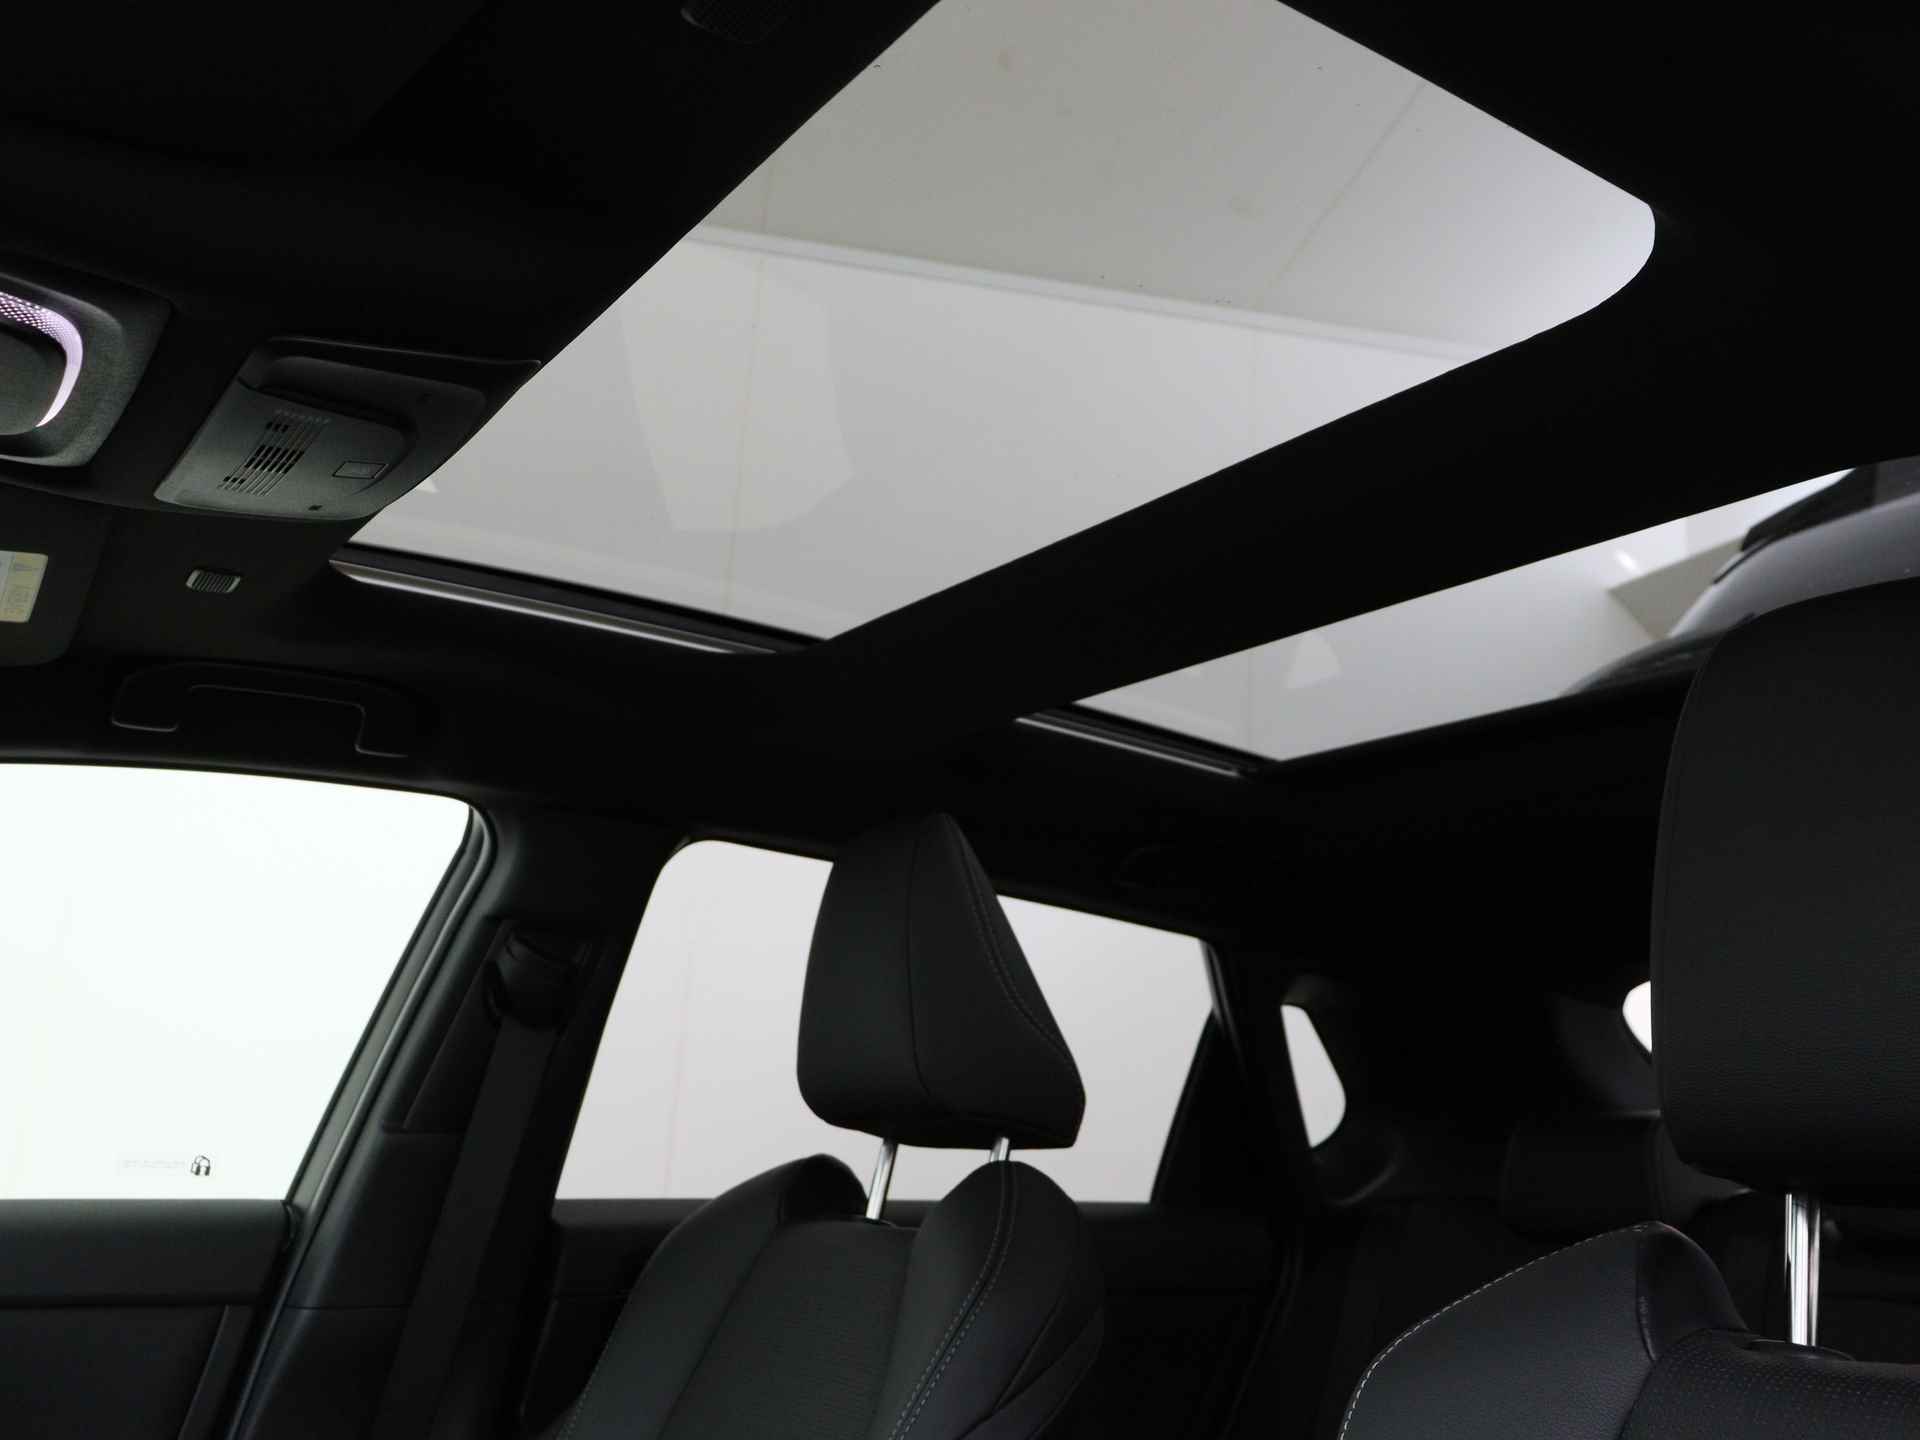 Toyota Bz4x Launch Edition Premium Bi-Tone uitvoering | Navigatie | Stoel&stuur verwarming | My T app | Panoramadak | Wegenbelasting vrij | Subsidie €2000,- aanvraag mogelijk. - 17/48